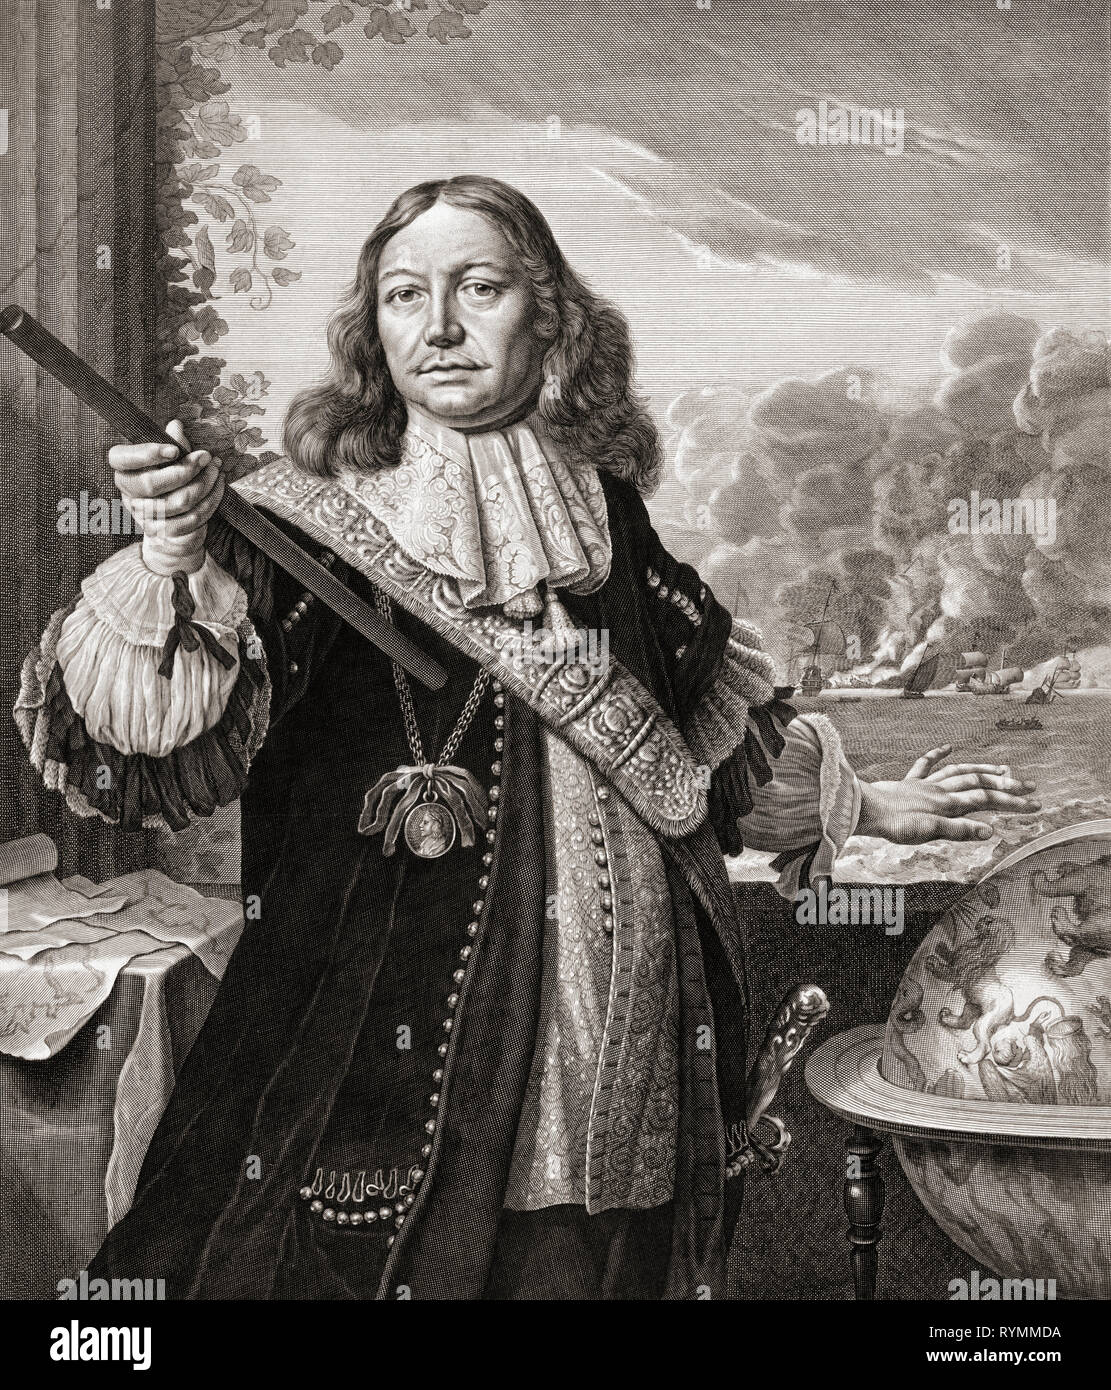 Johan (o Jan) Evertsen de Liefde c. 1619 - 1673. Olandese comandante navale. Egli è stato ucciso durante la Battaglia di Texel aka Battaglia di Kijkduin durante la terza guerra anglo-olandese. Foto Stock